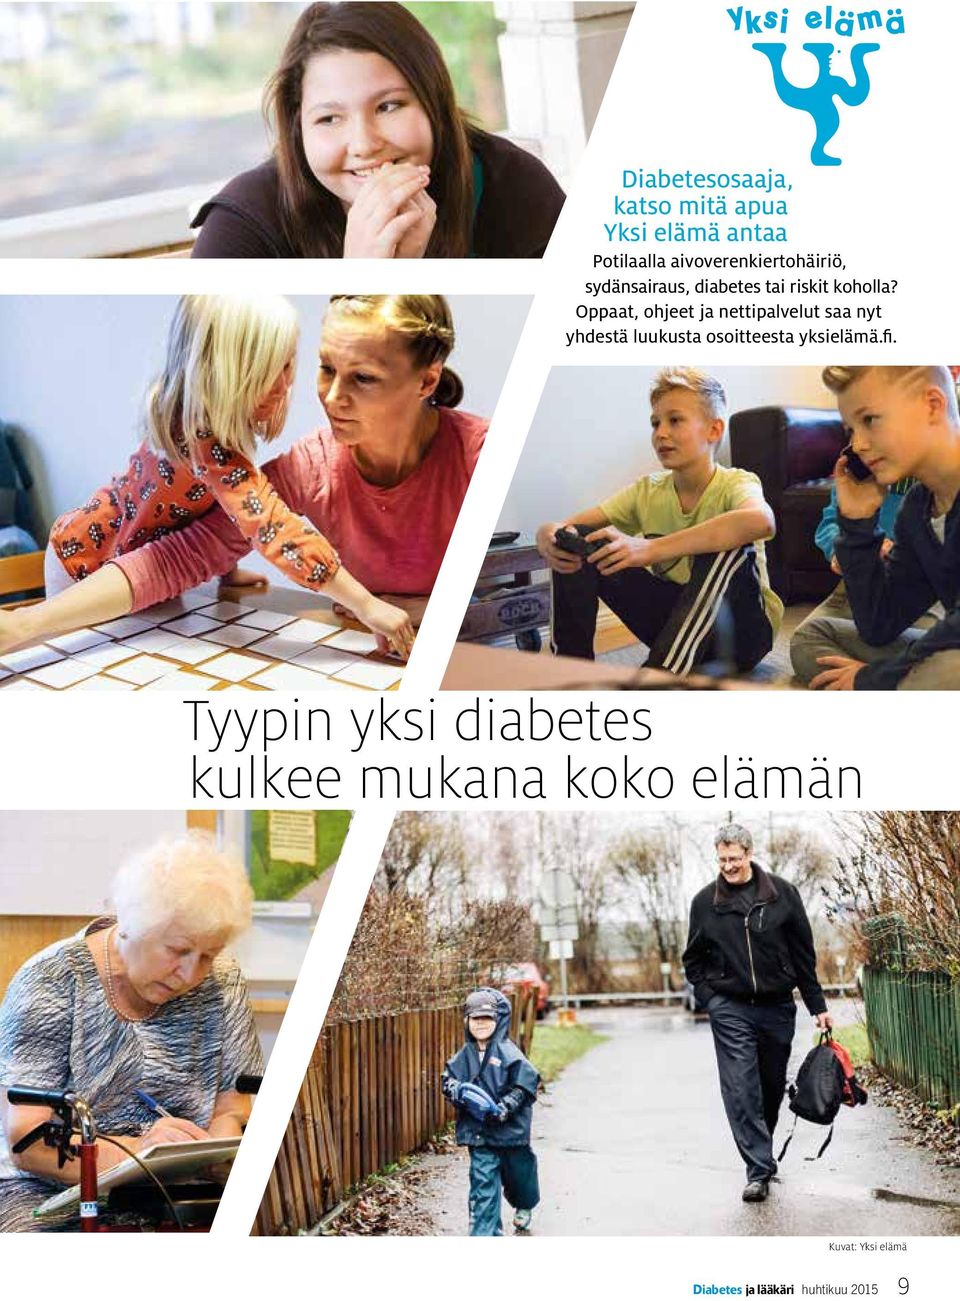 Oppaat, ohjeet ja nettipalvelut saa nyt yhdestä luukusta osoitteesta yksielämä.fi.